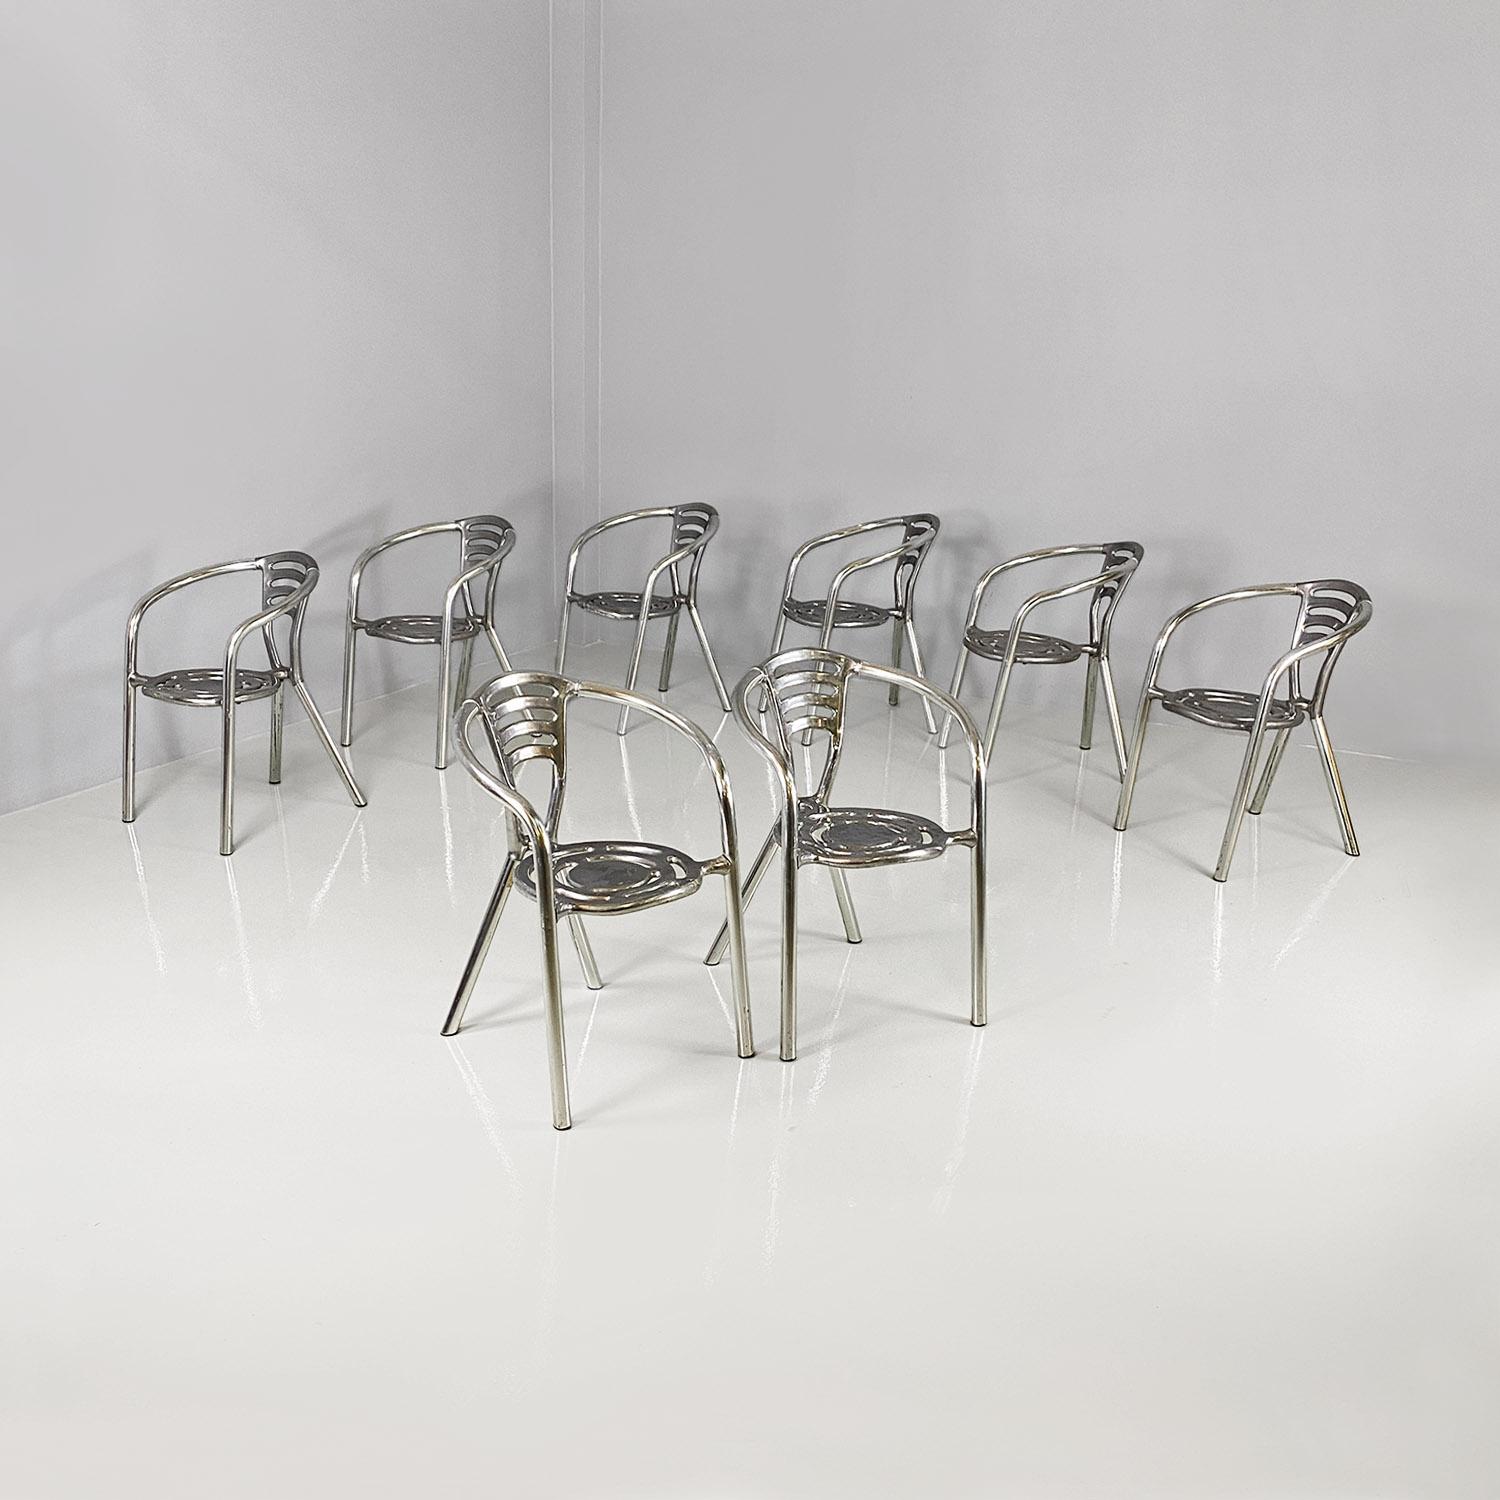 Satz von acht Stühlen des Modells Boulevard mit runder Sitzfläche, ganz aus Aluminium. Die Sitzfläche und die Rückenlehne haben dekorative Perforationen mit geschwungenen Linien, und die Struktur der Armlehnen und der Beine besteht aus